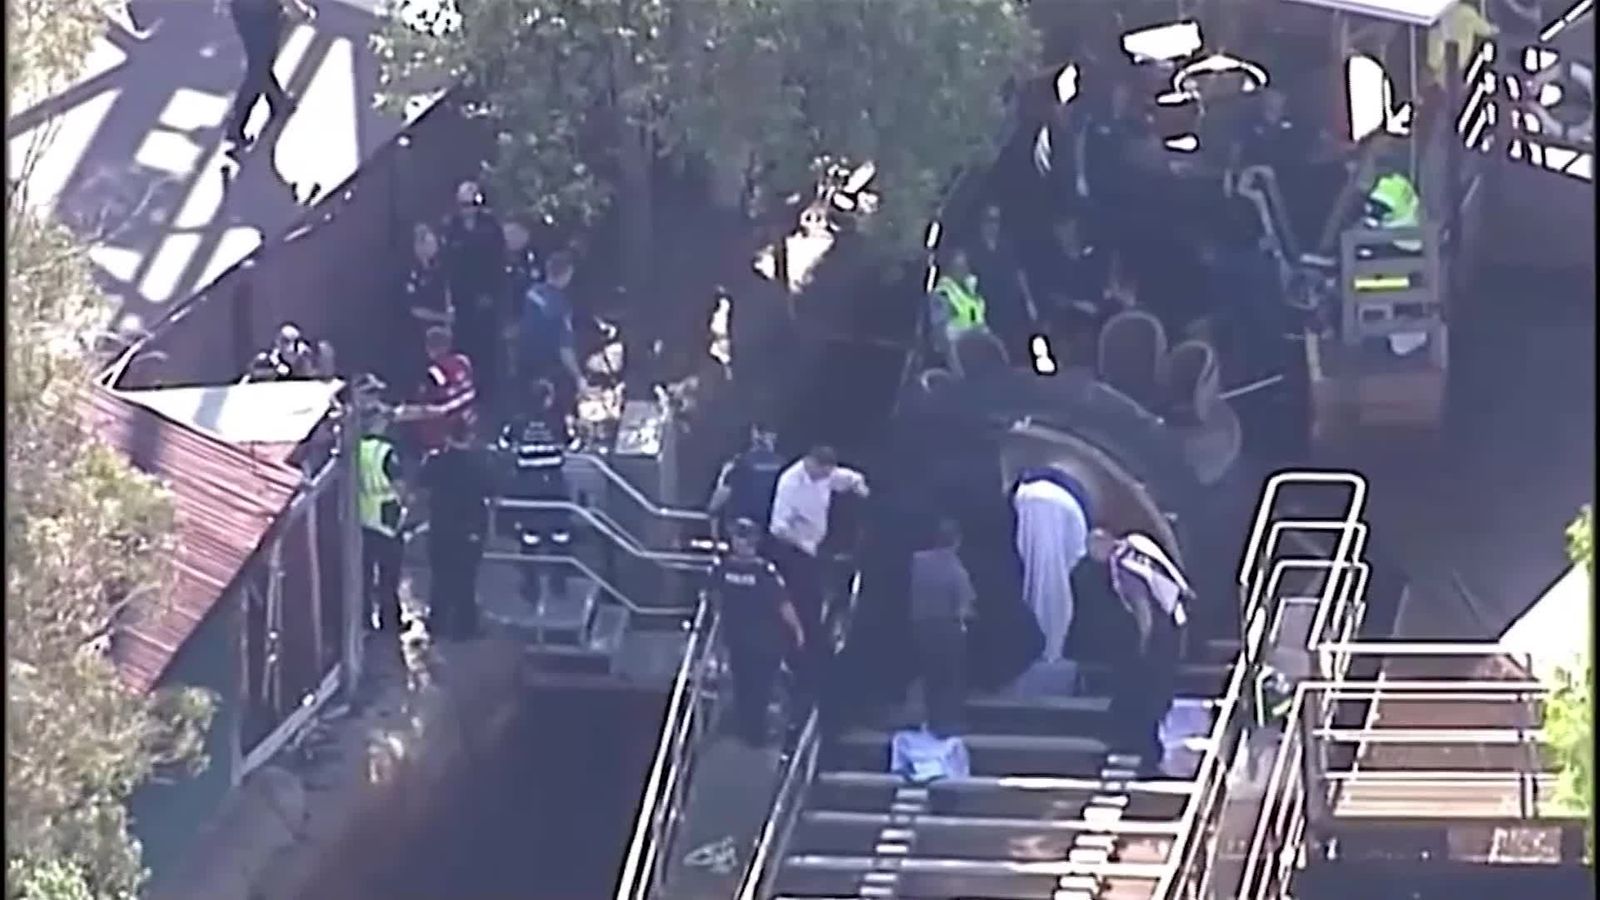 Neljä kuoli Australiassa huvipuistoturmassa laitteessa, jonka kaltainen  löytyy Linnanmäeltäkin – puistolle miljoonien sakot turvallisuusohjeiden  laiminlyönnistä 